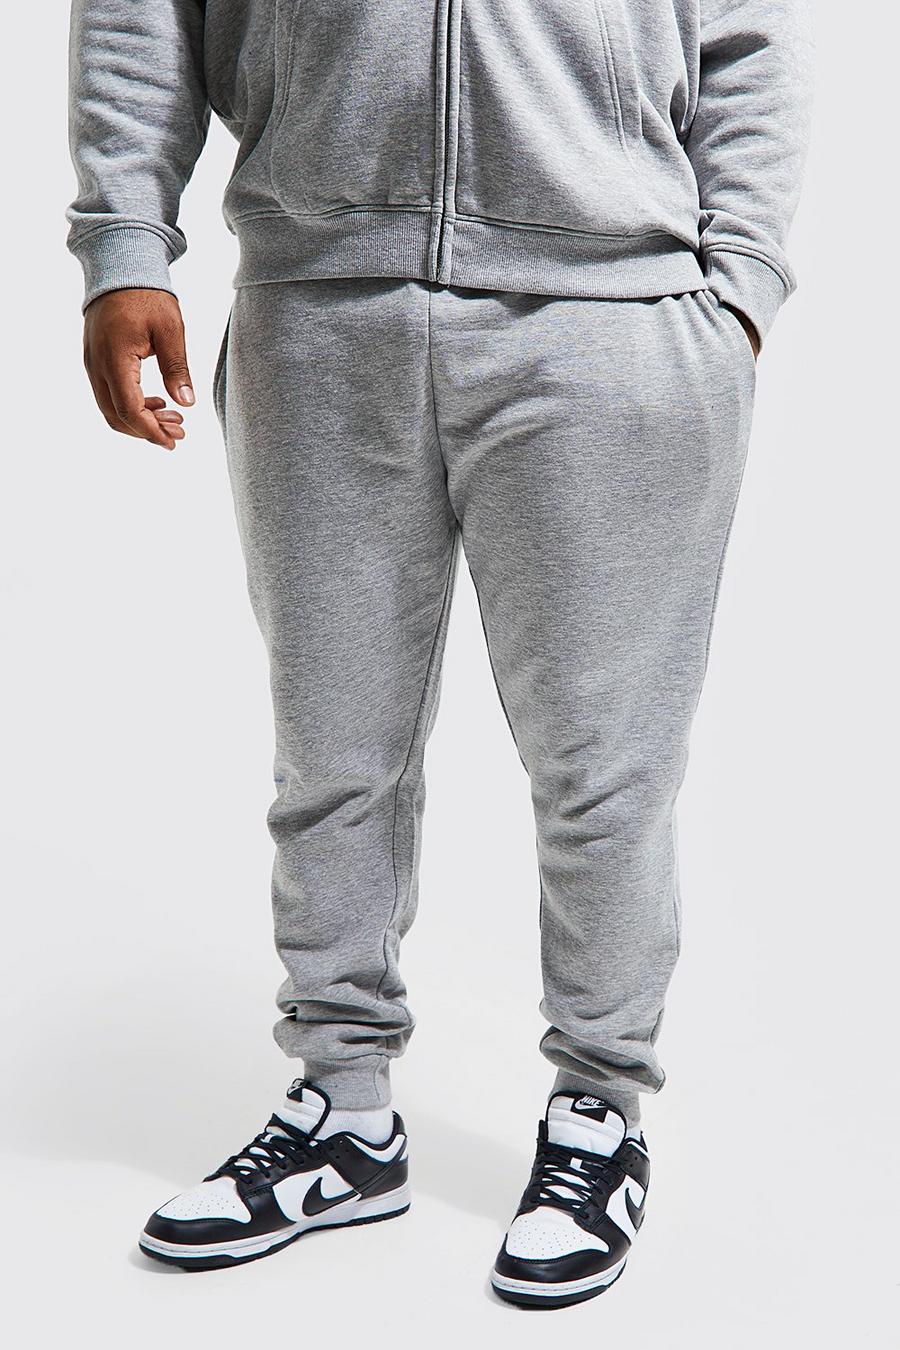 Grande taille - Jogging skinny basique en coton REEL, Grey marl gris